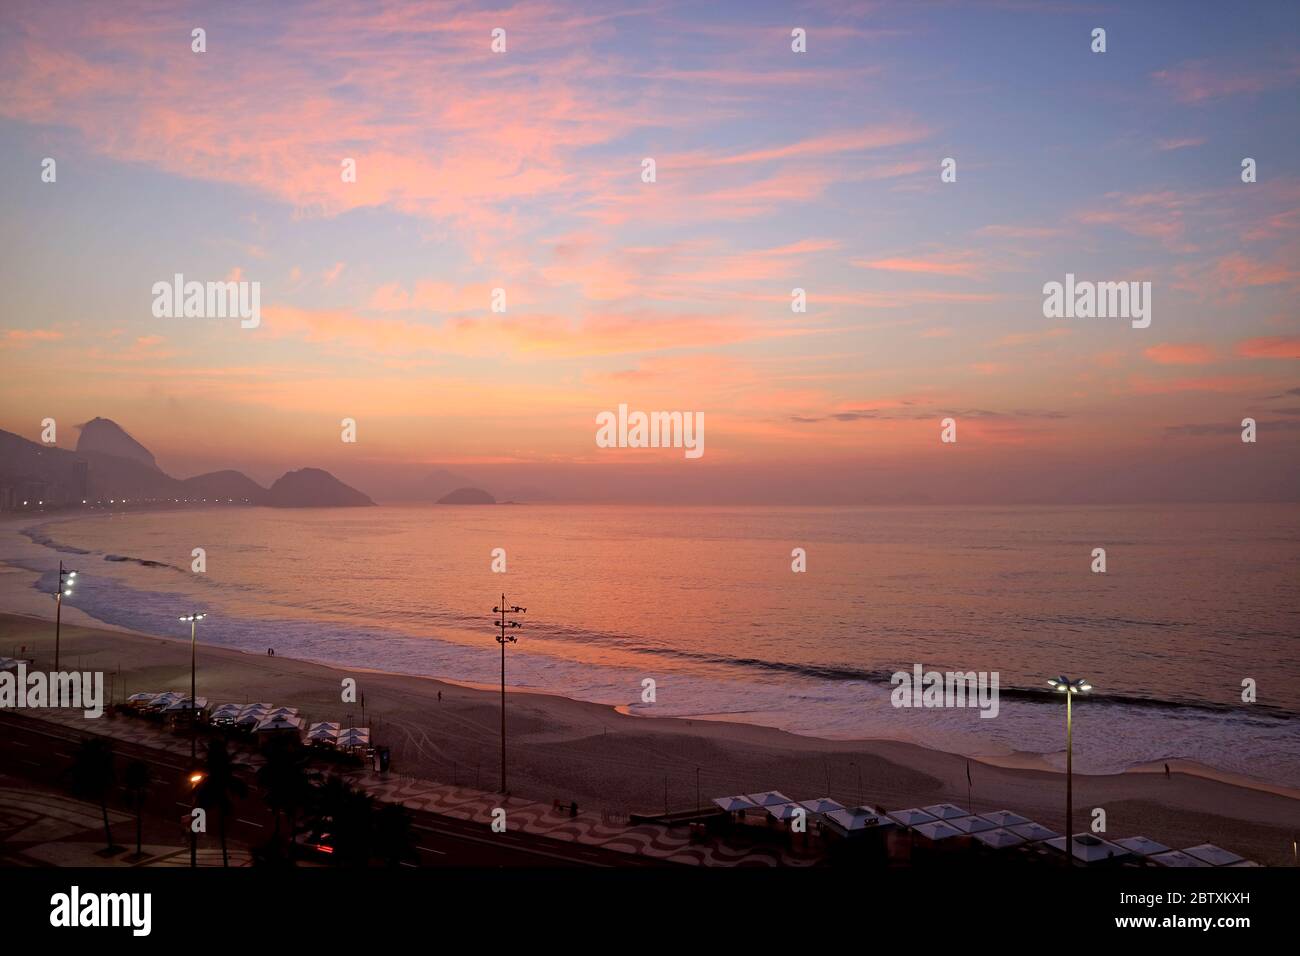 Vue panoramique imprenable sur la plage de Copacabana au coucher du soleil, Rio de Janeiro, Brésil, Amérique du Sud Banque D'Images